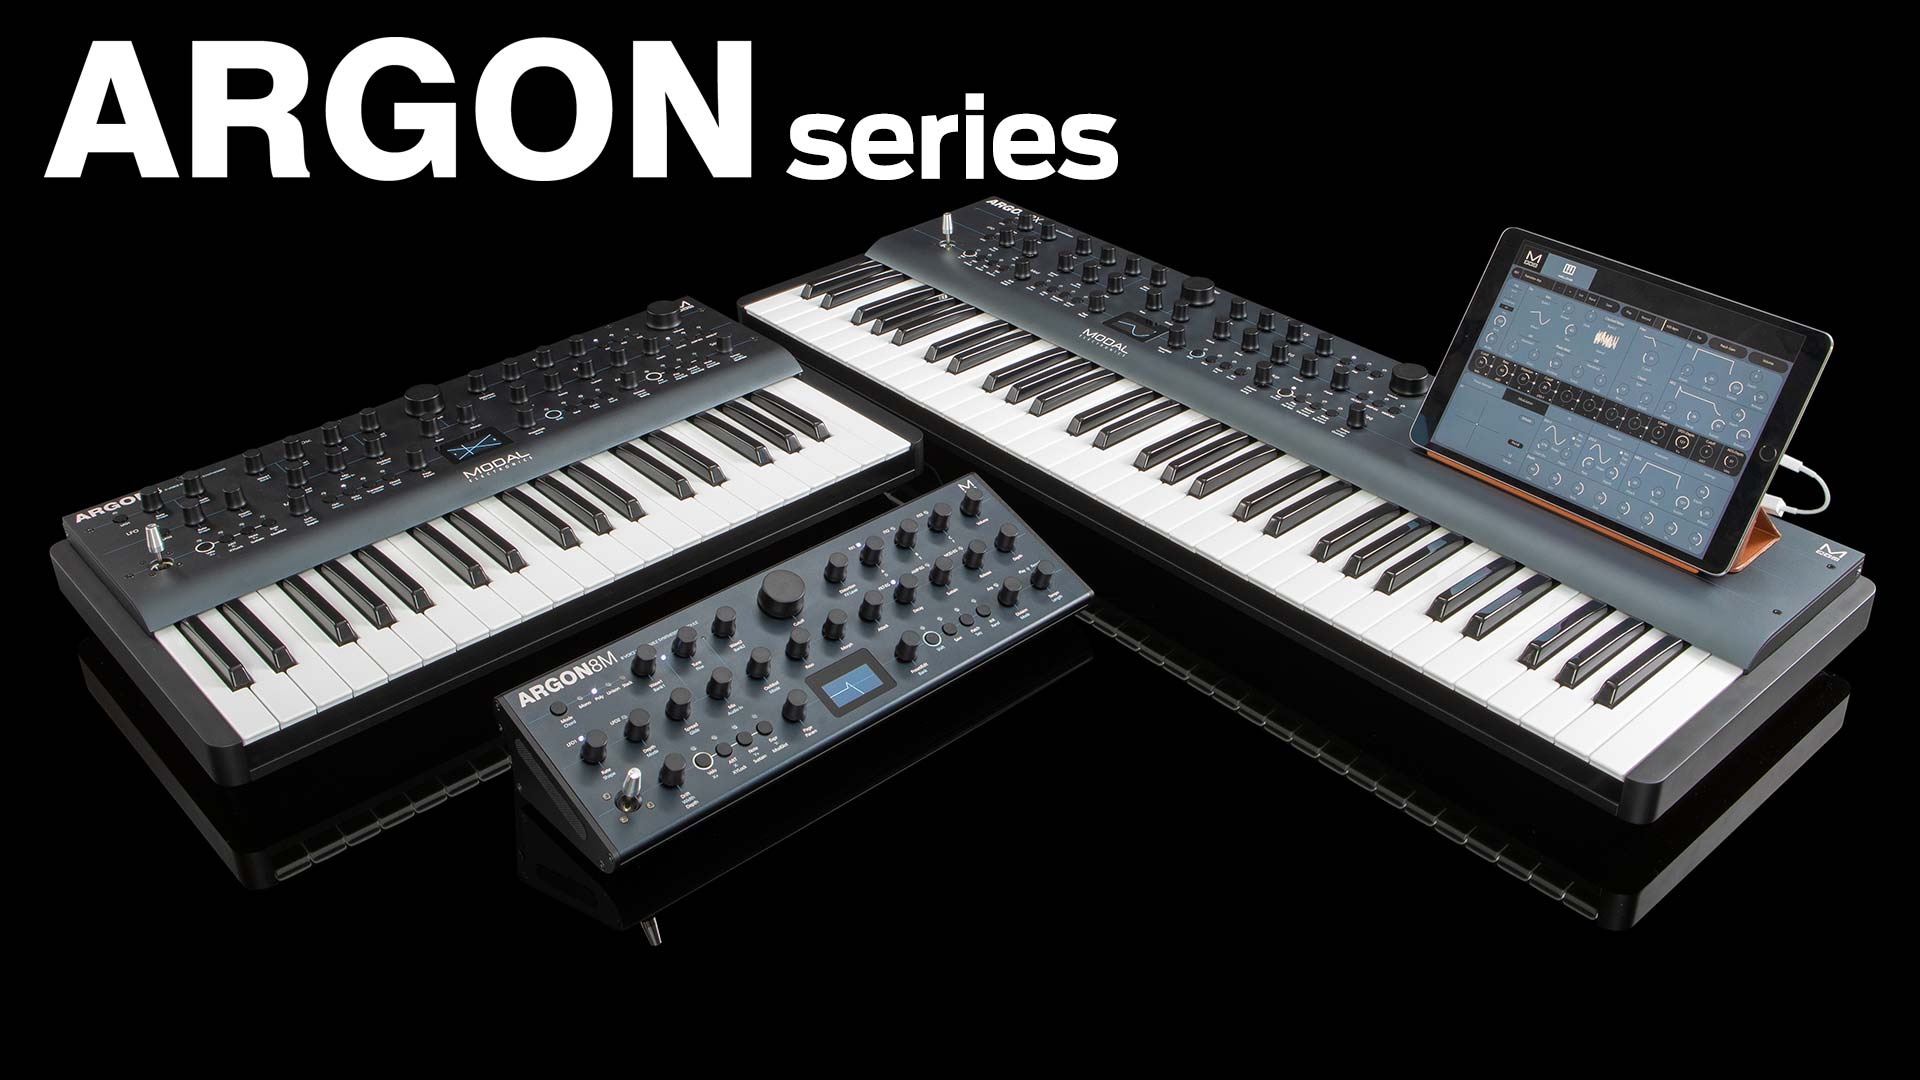 Potencia de tabla de ondas (síntesis wavetable) y opciones ampliadas para diseño sonoro forman parte de la promesa de Modal Electronics ARGON series